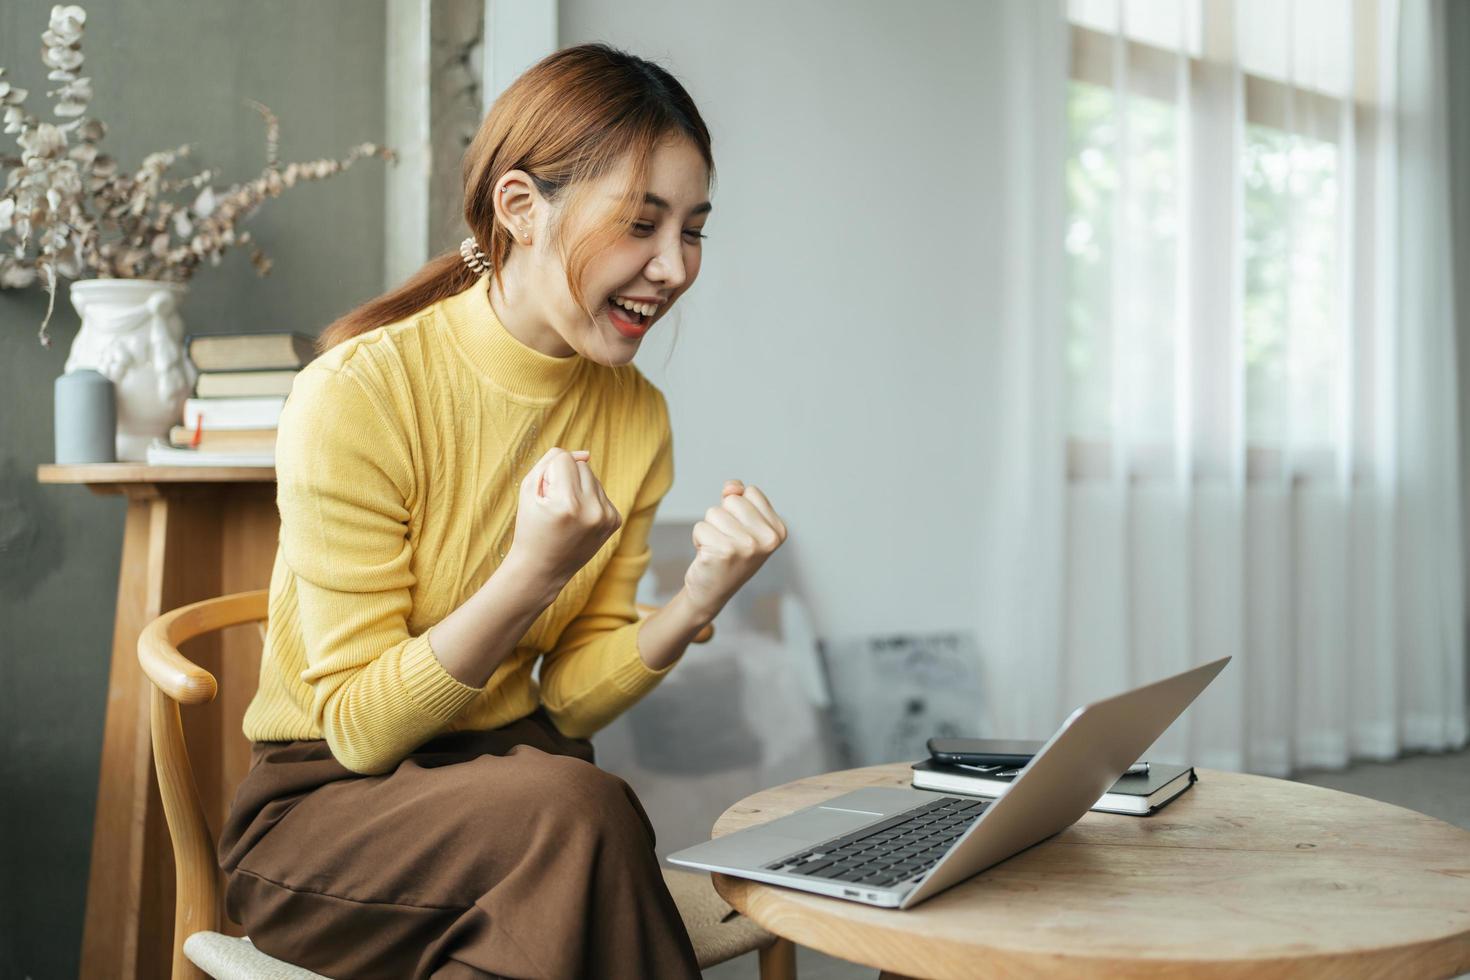 jovem mulher com laptop expressando emoção no escritório em casa, mulher asiática animada se sente eufórica lendo boas notícias online. foto